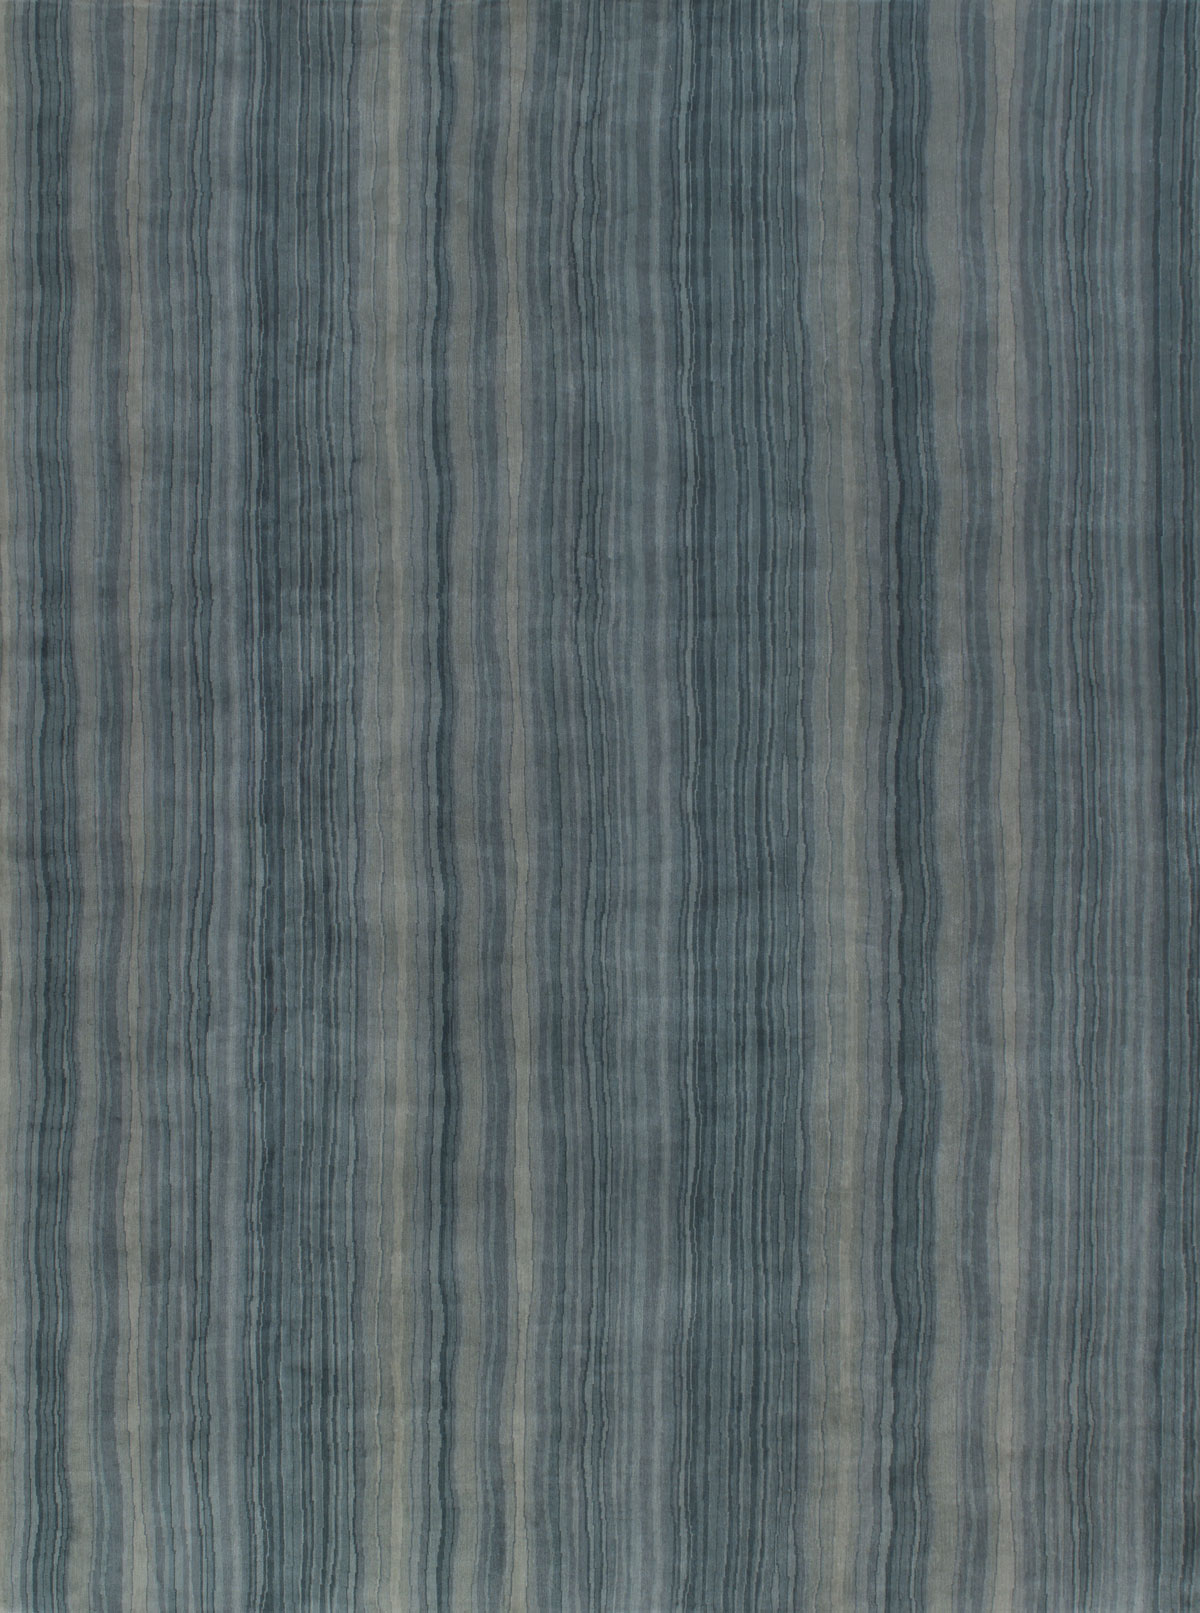 Jaen Jade Striped Handknotted Rug ☞ Size: 300 x 300 cm